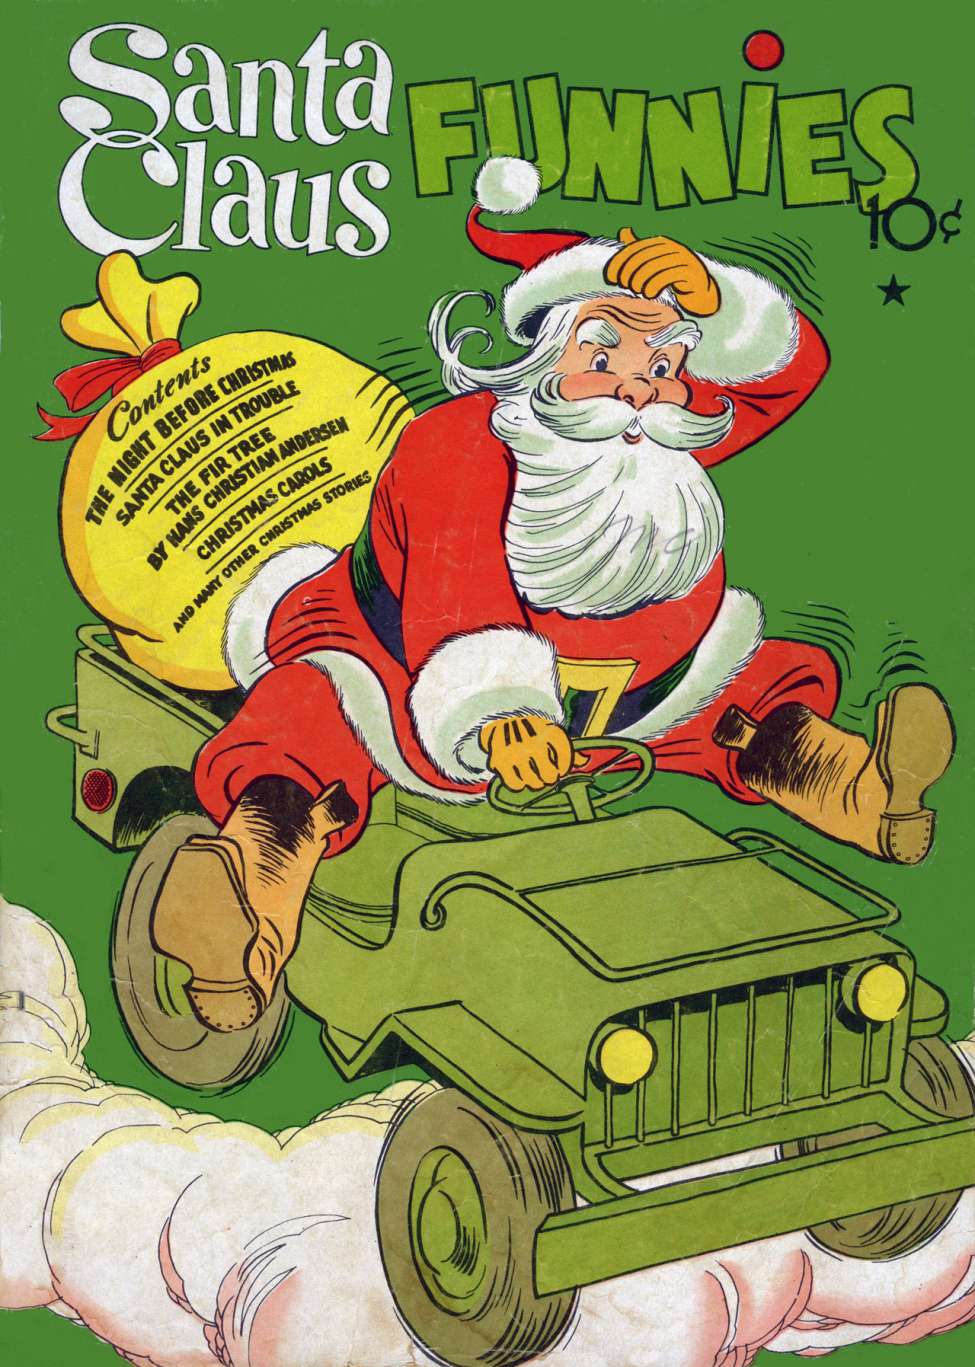 Papai Noel passou pelas eras de platina, ouro e prata dos quadrinhos